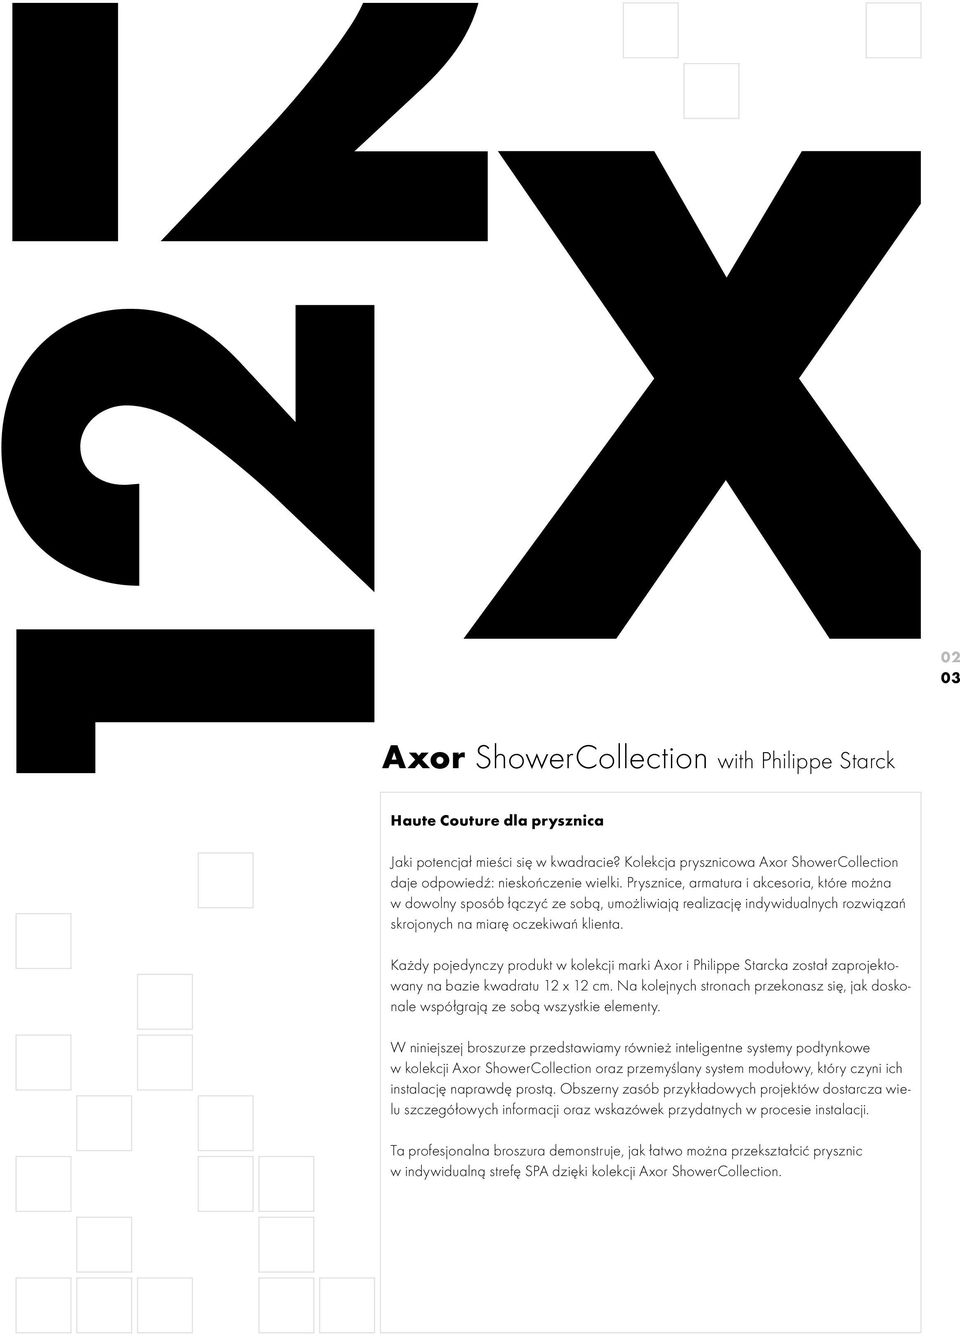 02 03 Każdy pojedynczy produkt w kolekcji marki Axor i Philippe Starcka został zaprojektowany na bazie kwadratu 12 x 12 cm.